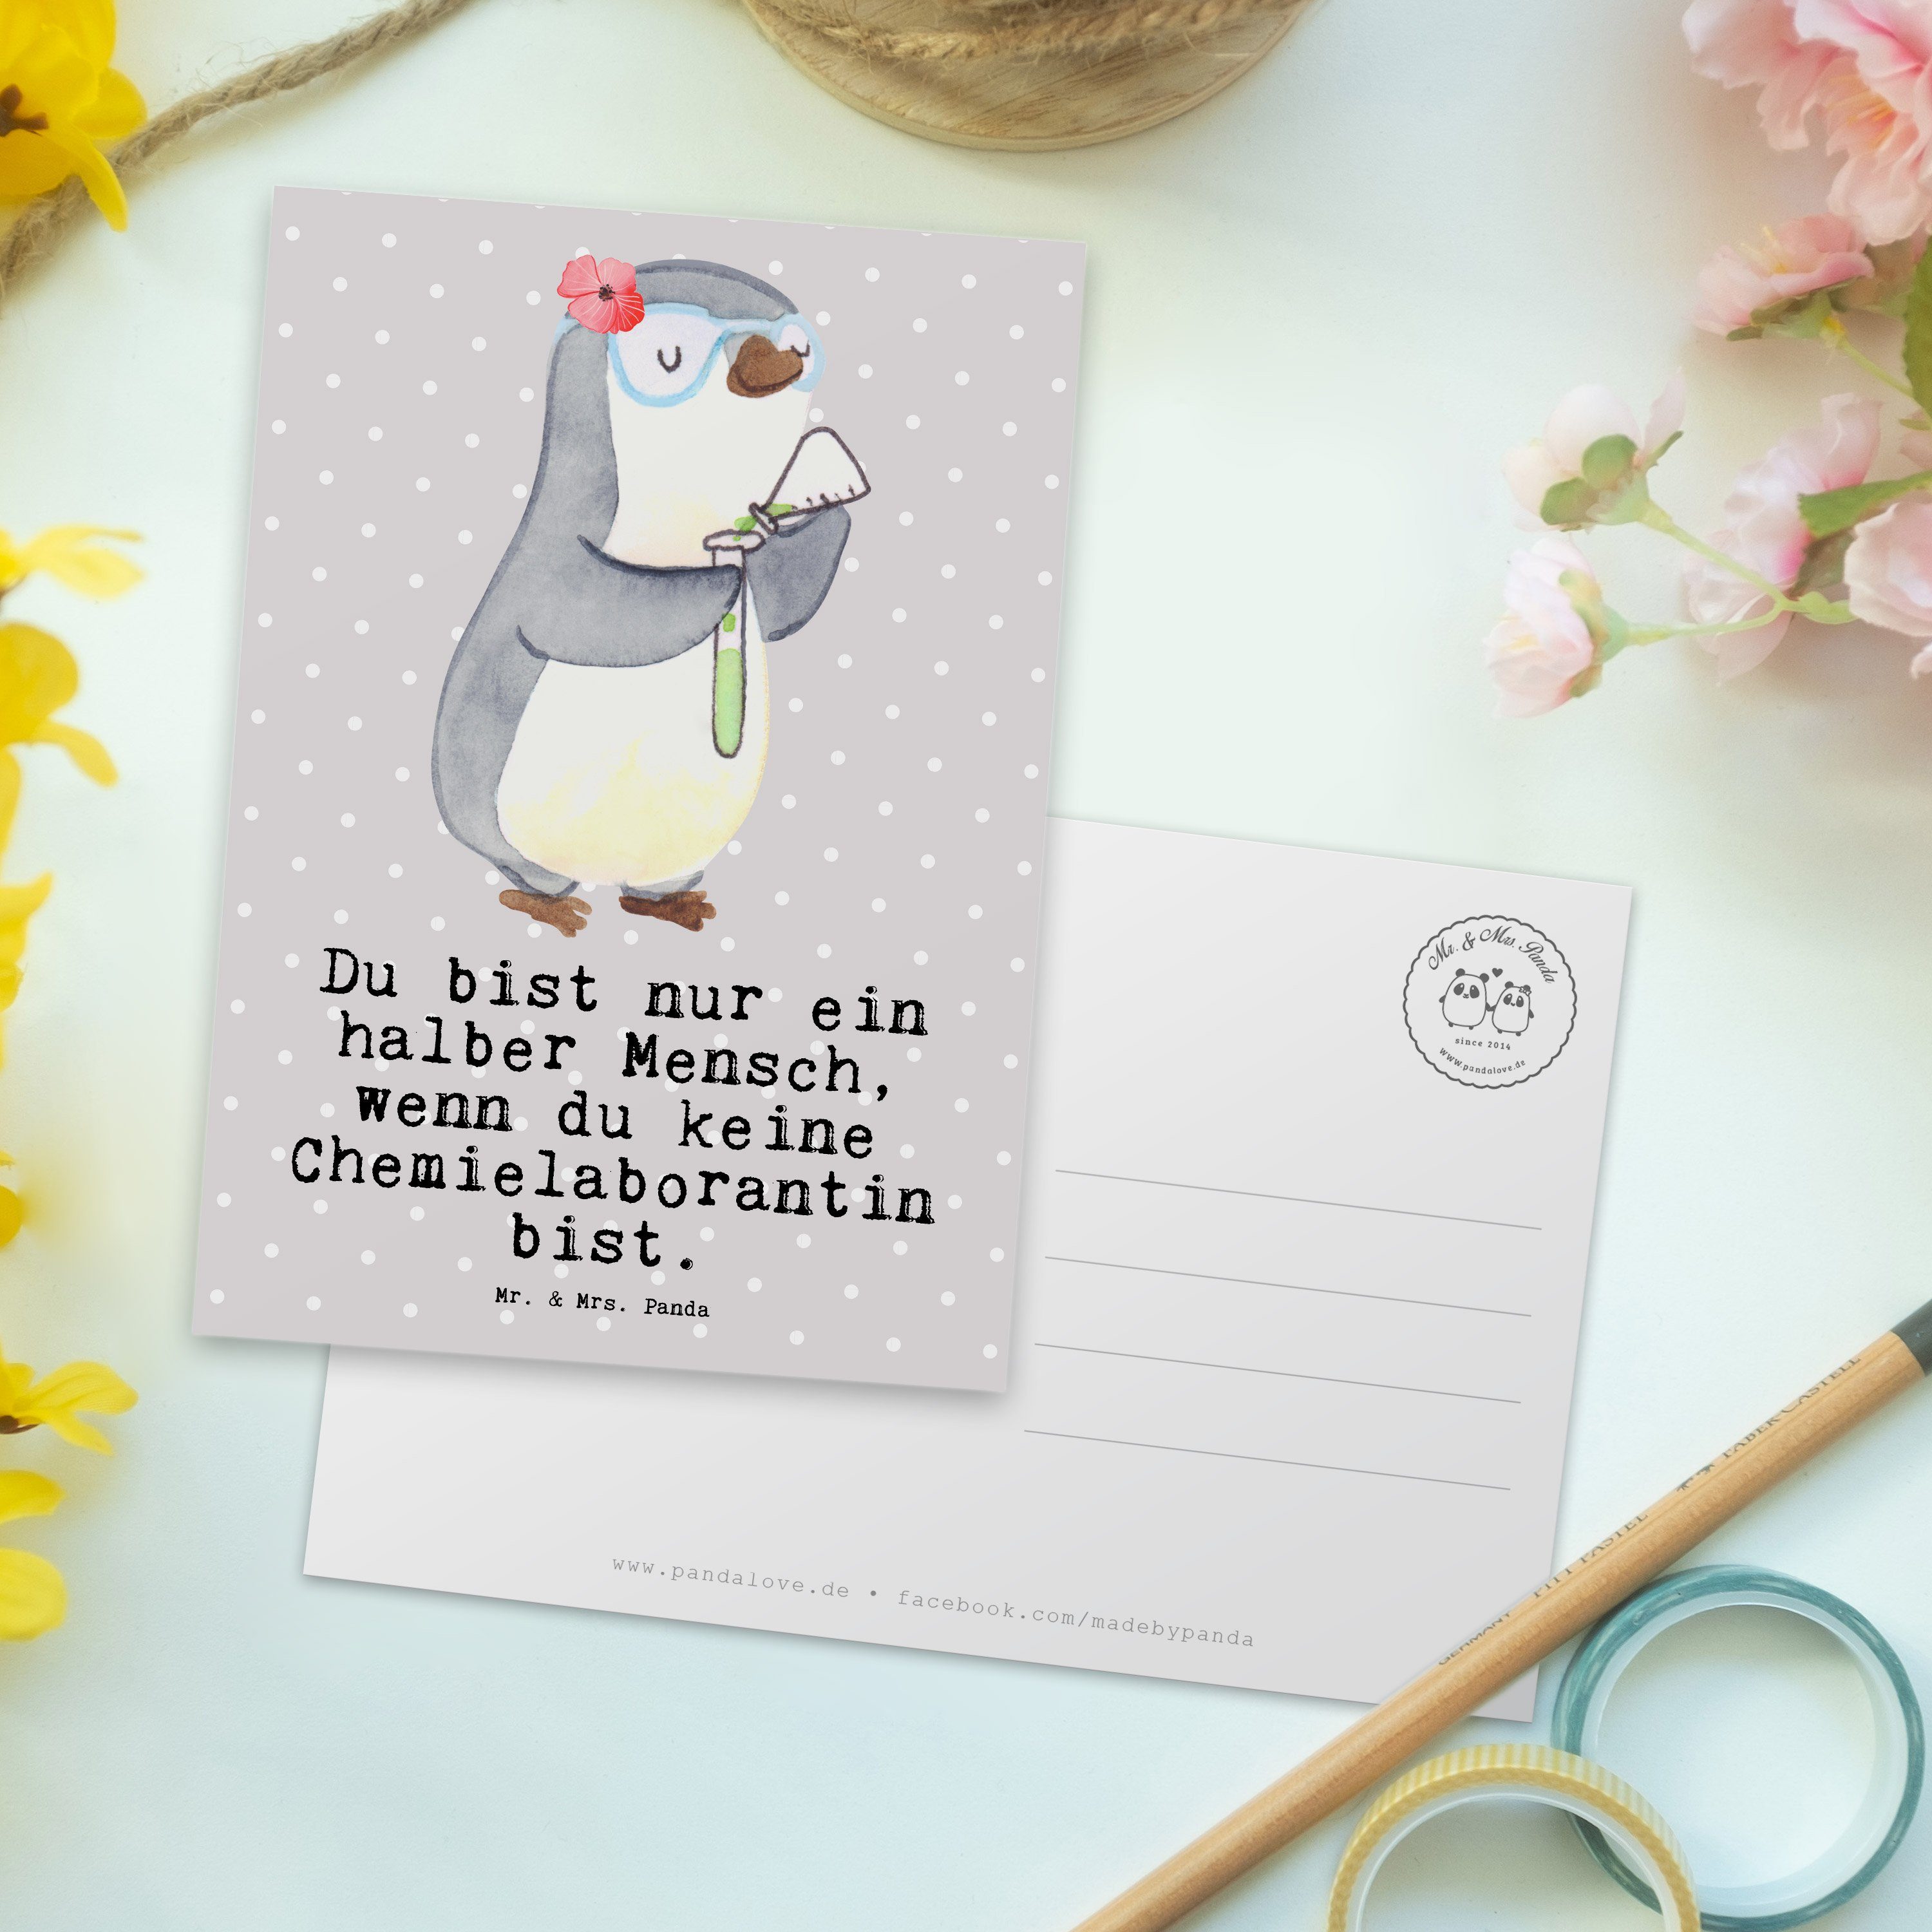 Mr. & - Chemieunterricht Mrs. Herz Geschenk, Chemielaborantin Panda mit Postkarte Grau - Pastell